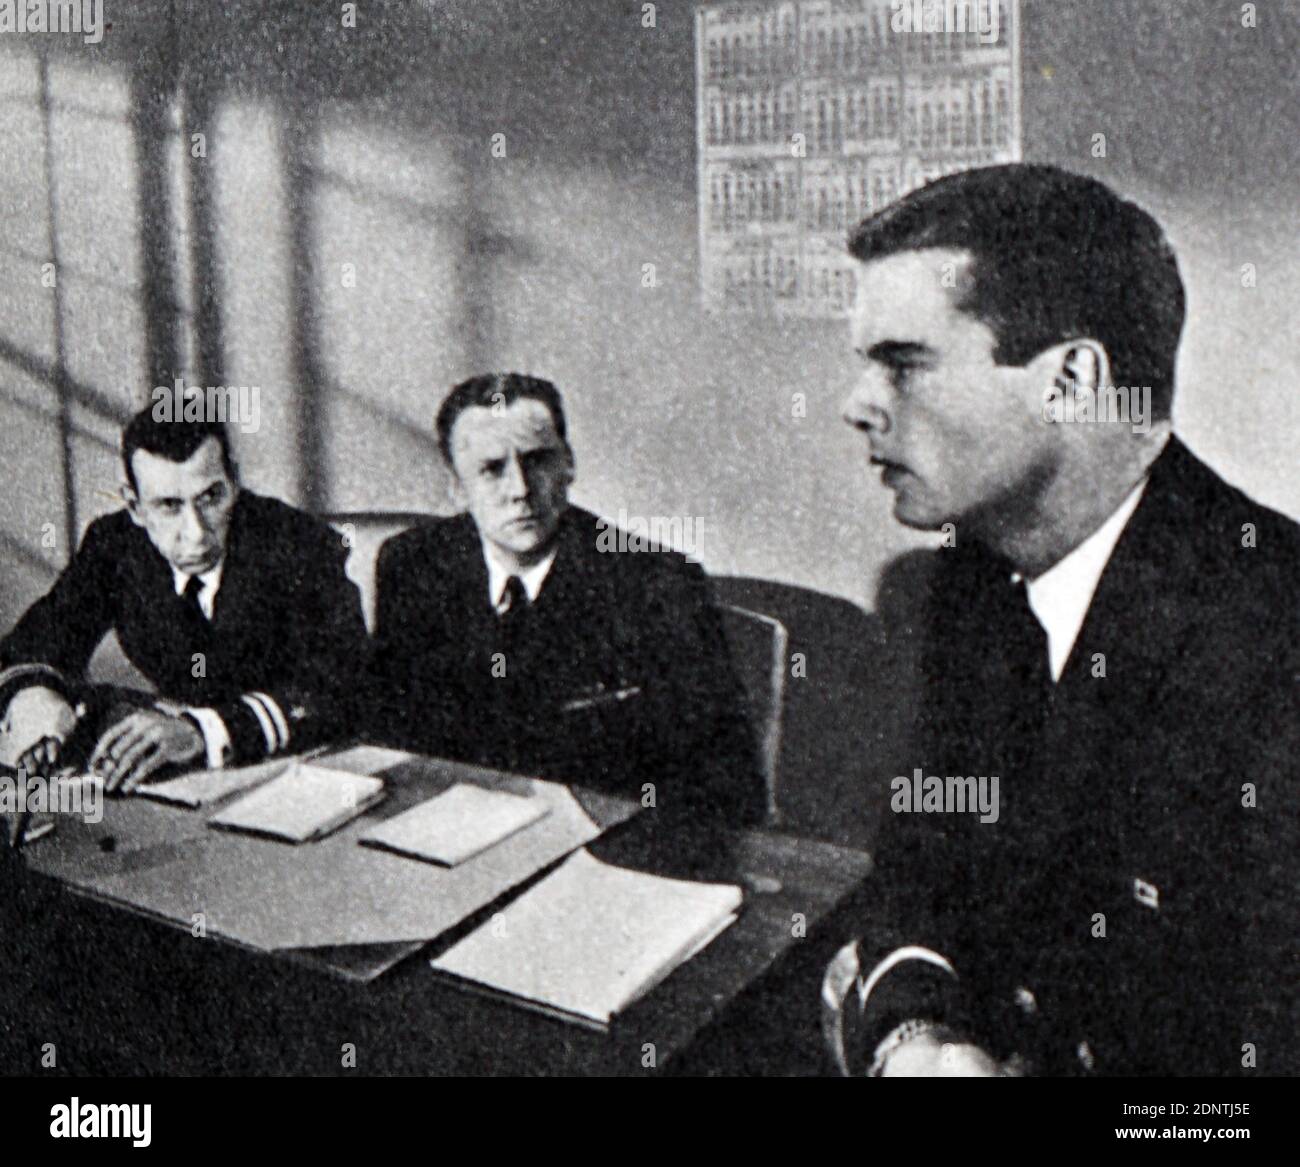 Film encore de 'The Caine Muminy' avec Humphrey Bogart, Fred MacMurray, Van Johnson et Jose Ferrer. Banque D'Images